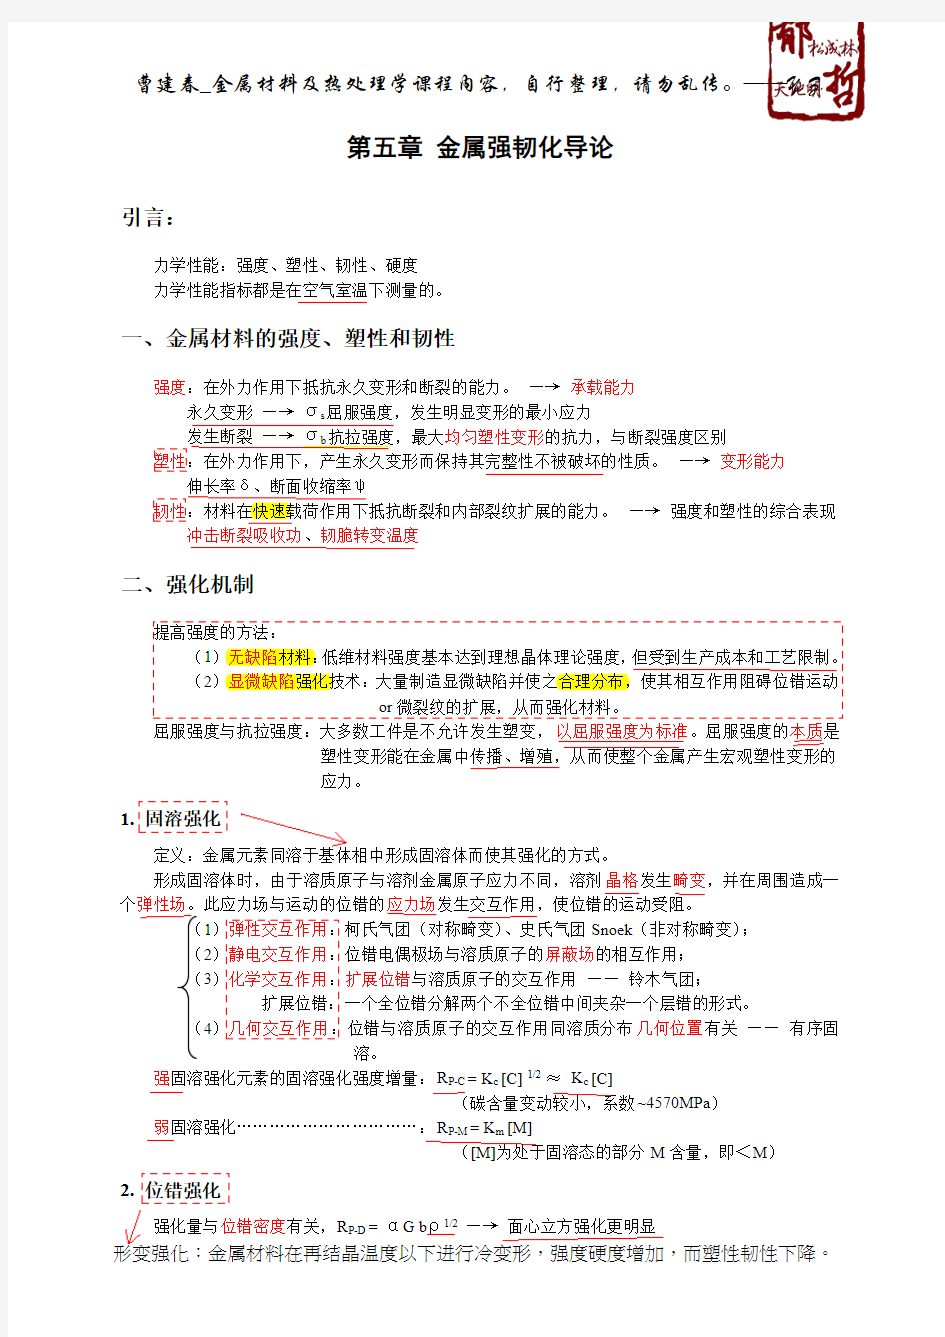 第五章金属强韧化导论.pdf